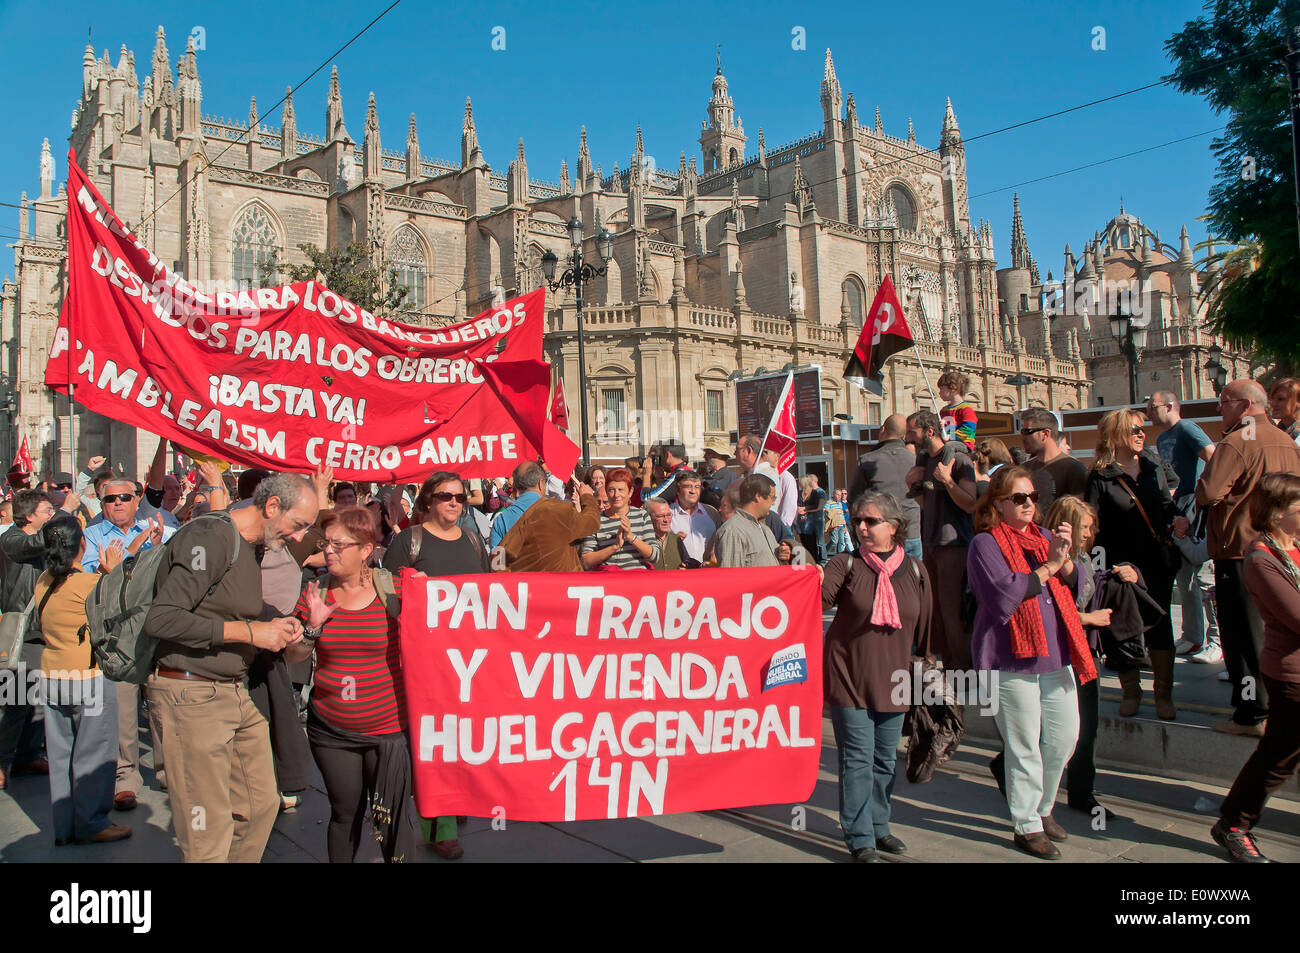 General strike, Demonstration, November 14, 2012, Seville, Spain, Europe Stock Photo